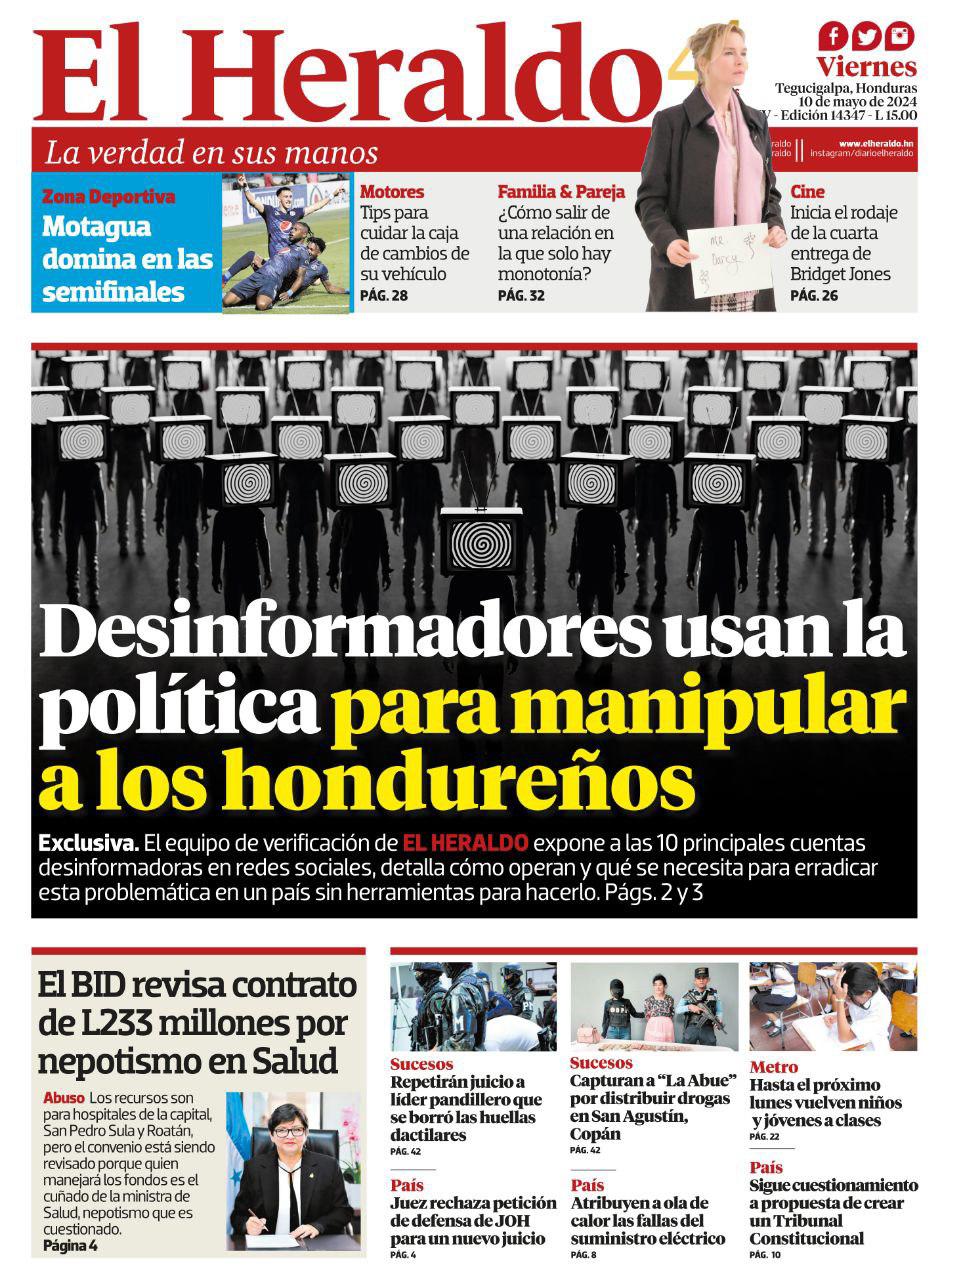 Desinformadores usan la política para manipular a los hondureños